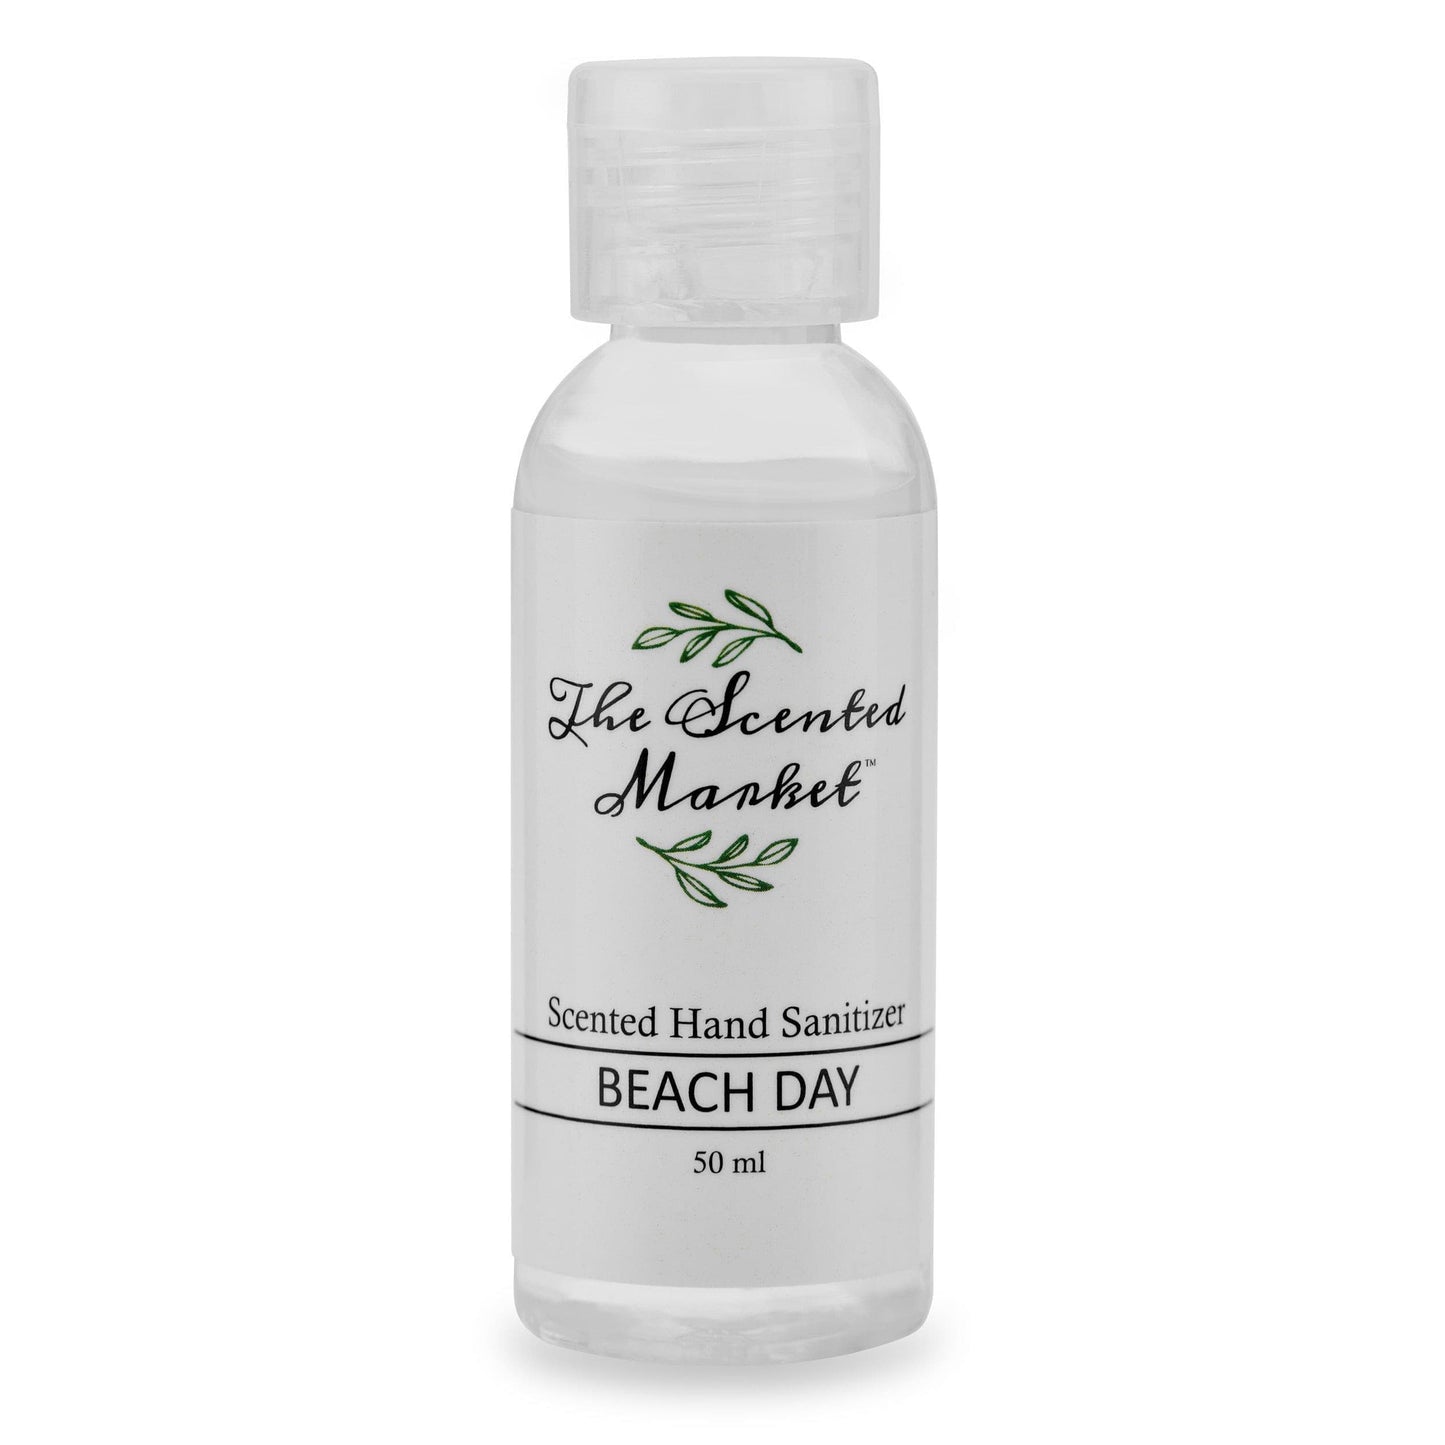 BEACH DAY Hand Sanitizer